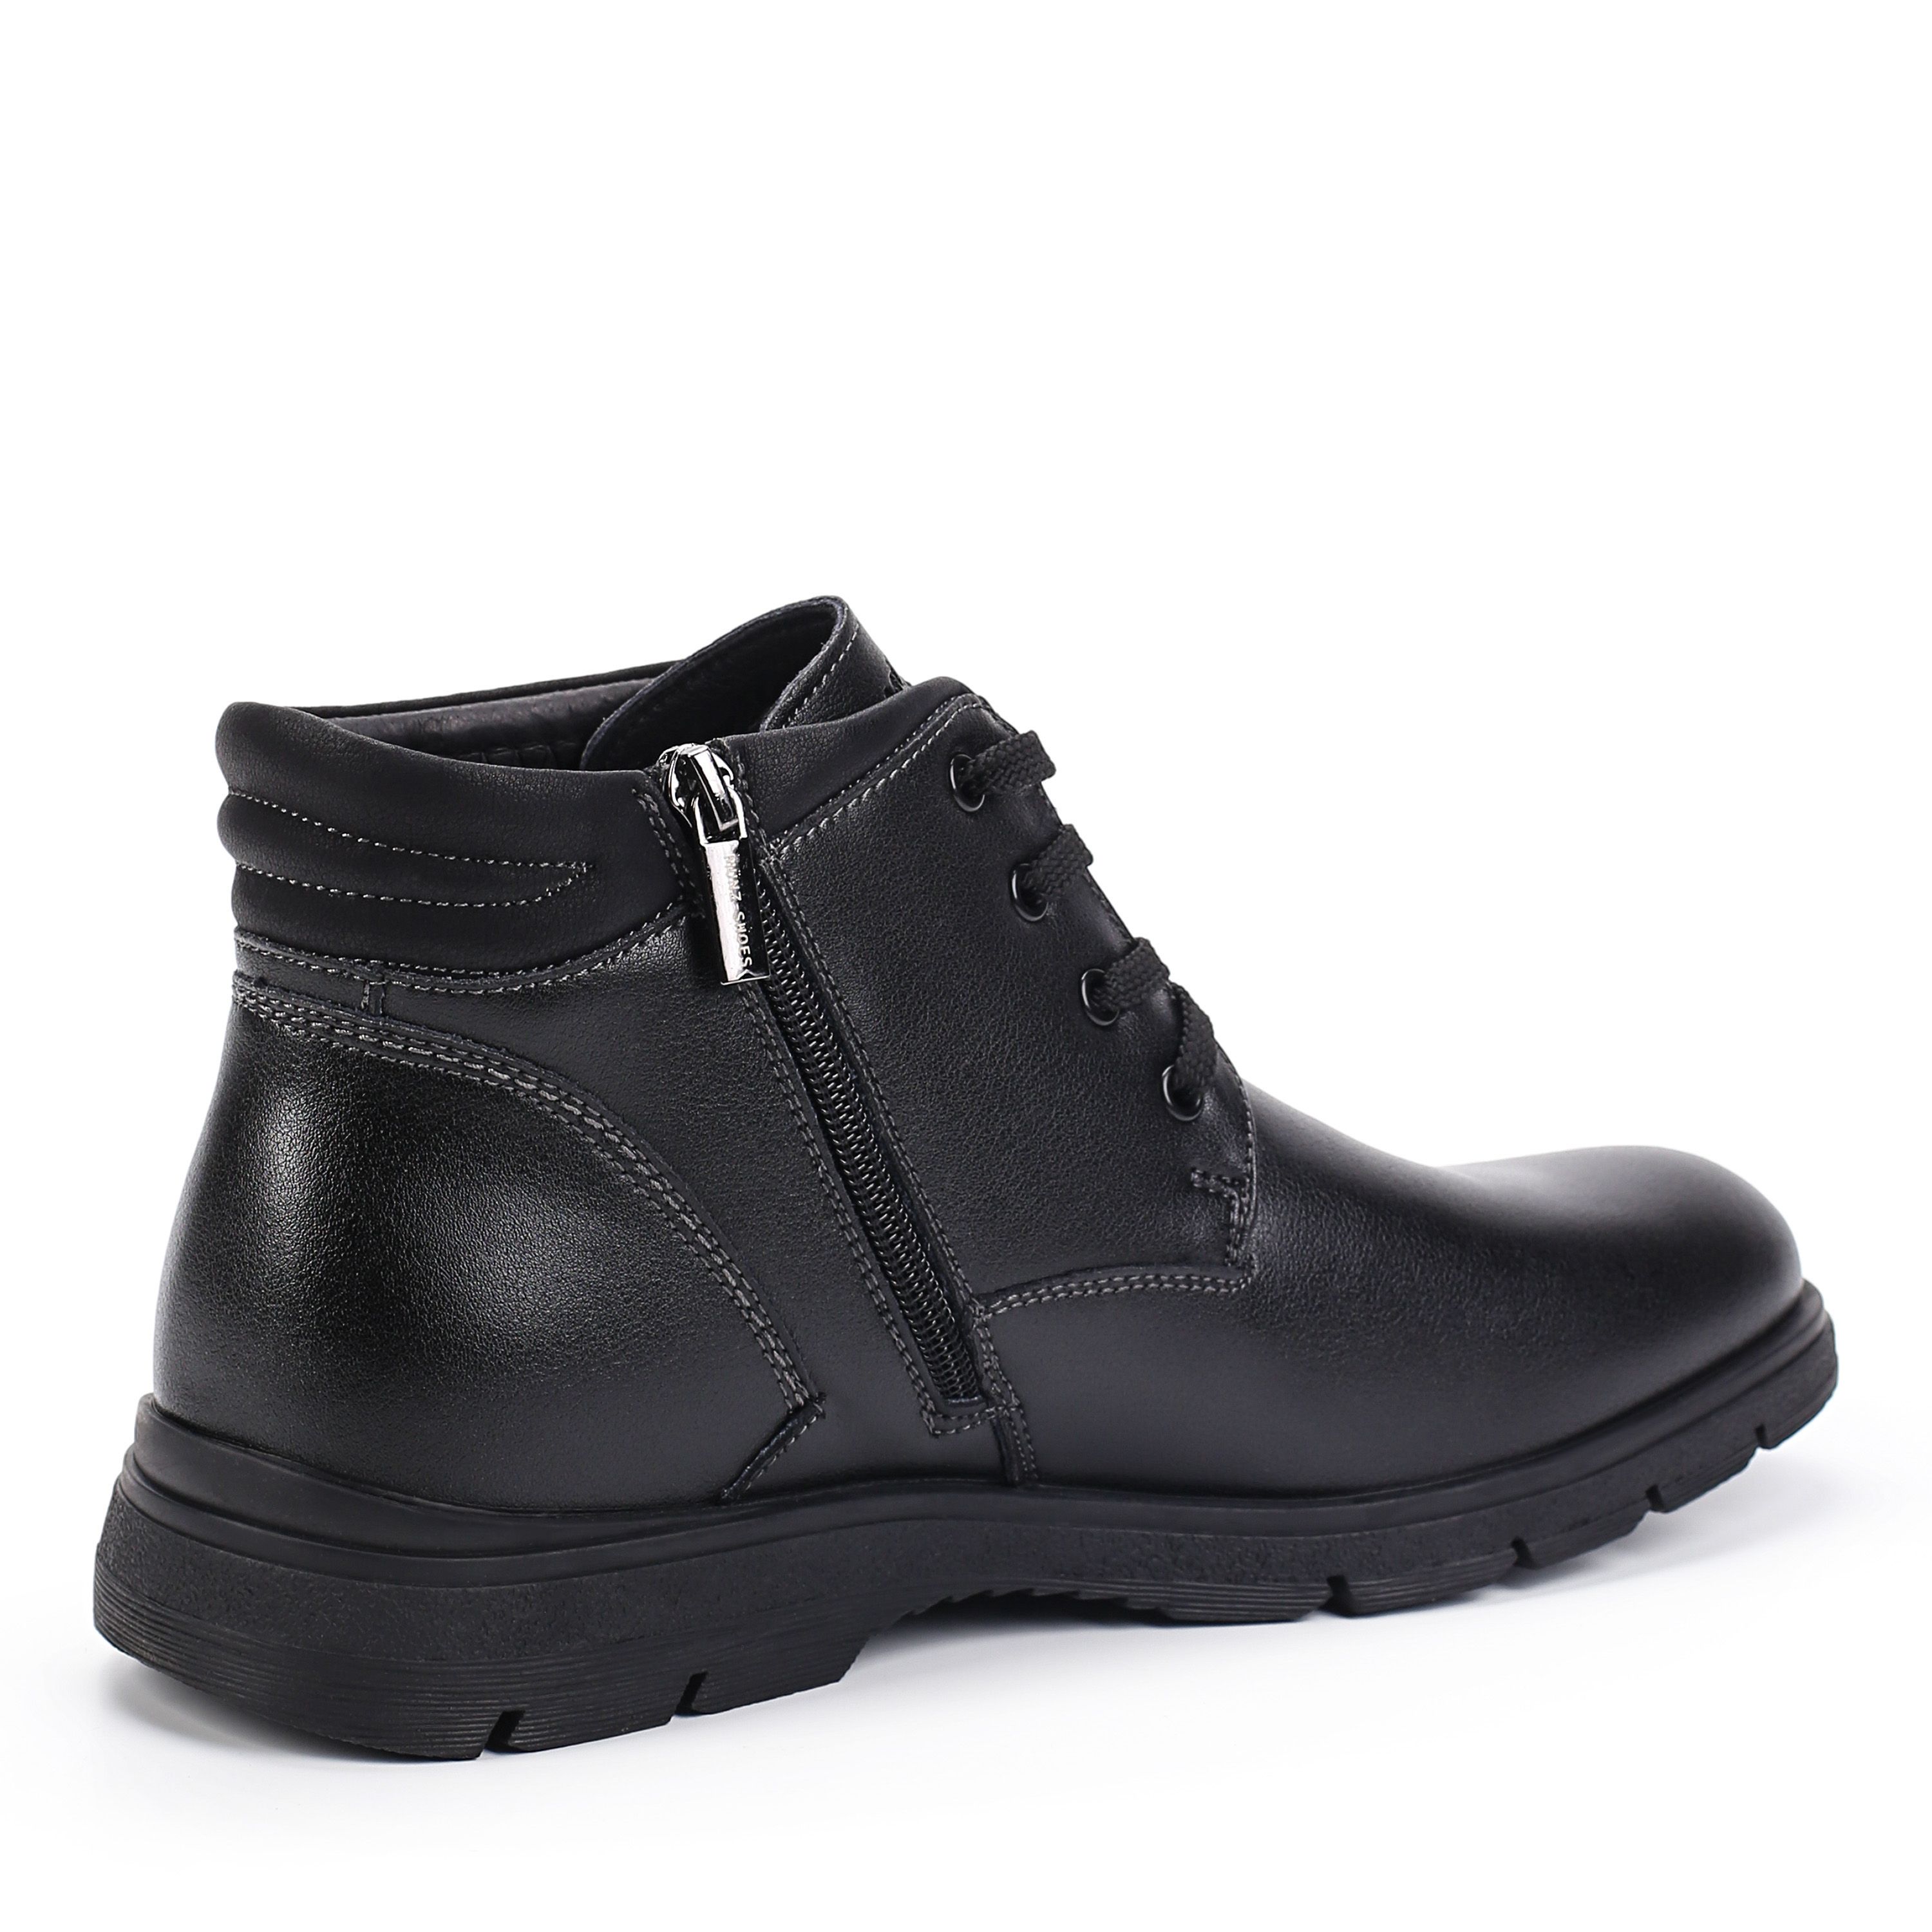 Ботинки MUNZ Shoes 098-126A-2602 098-126A-2602, цвет черный, размер 42 дерби - фото 3